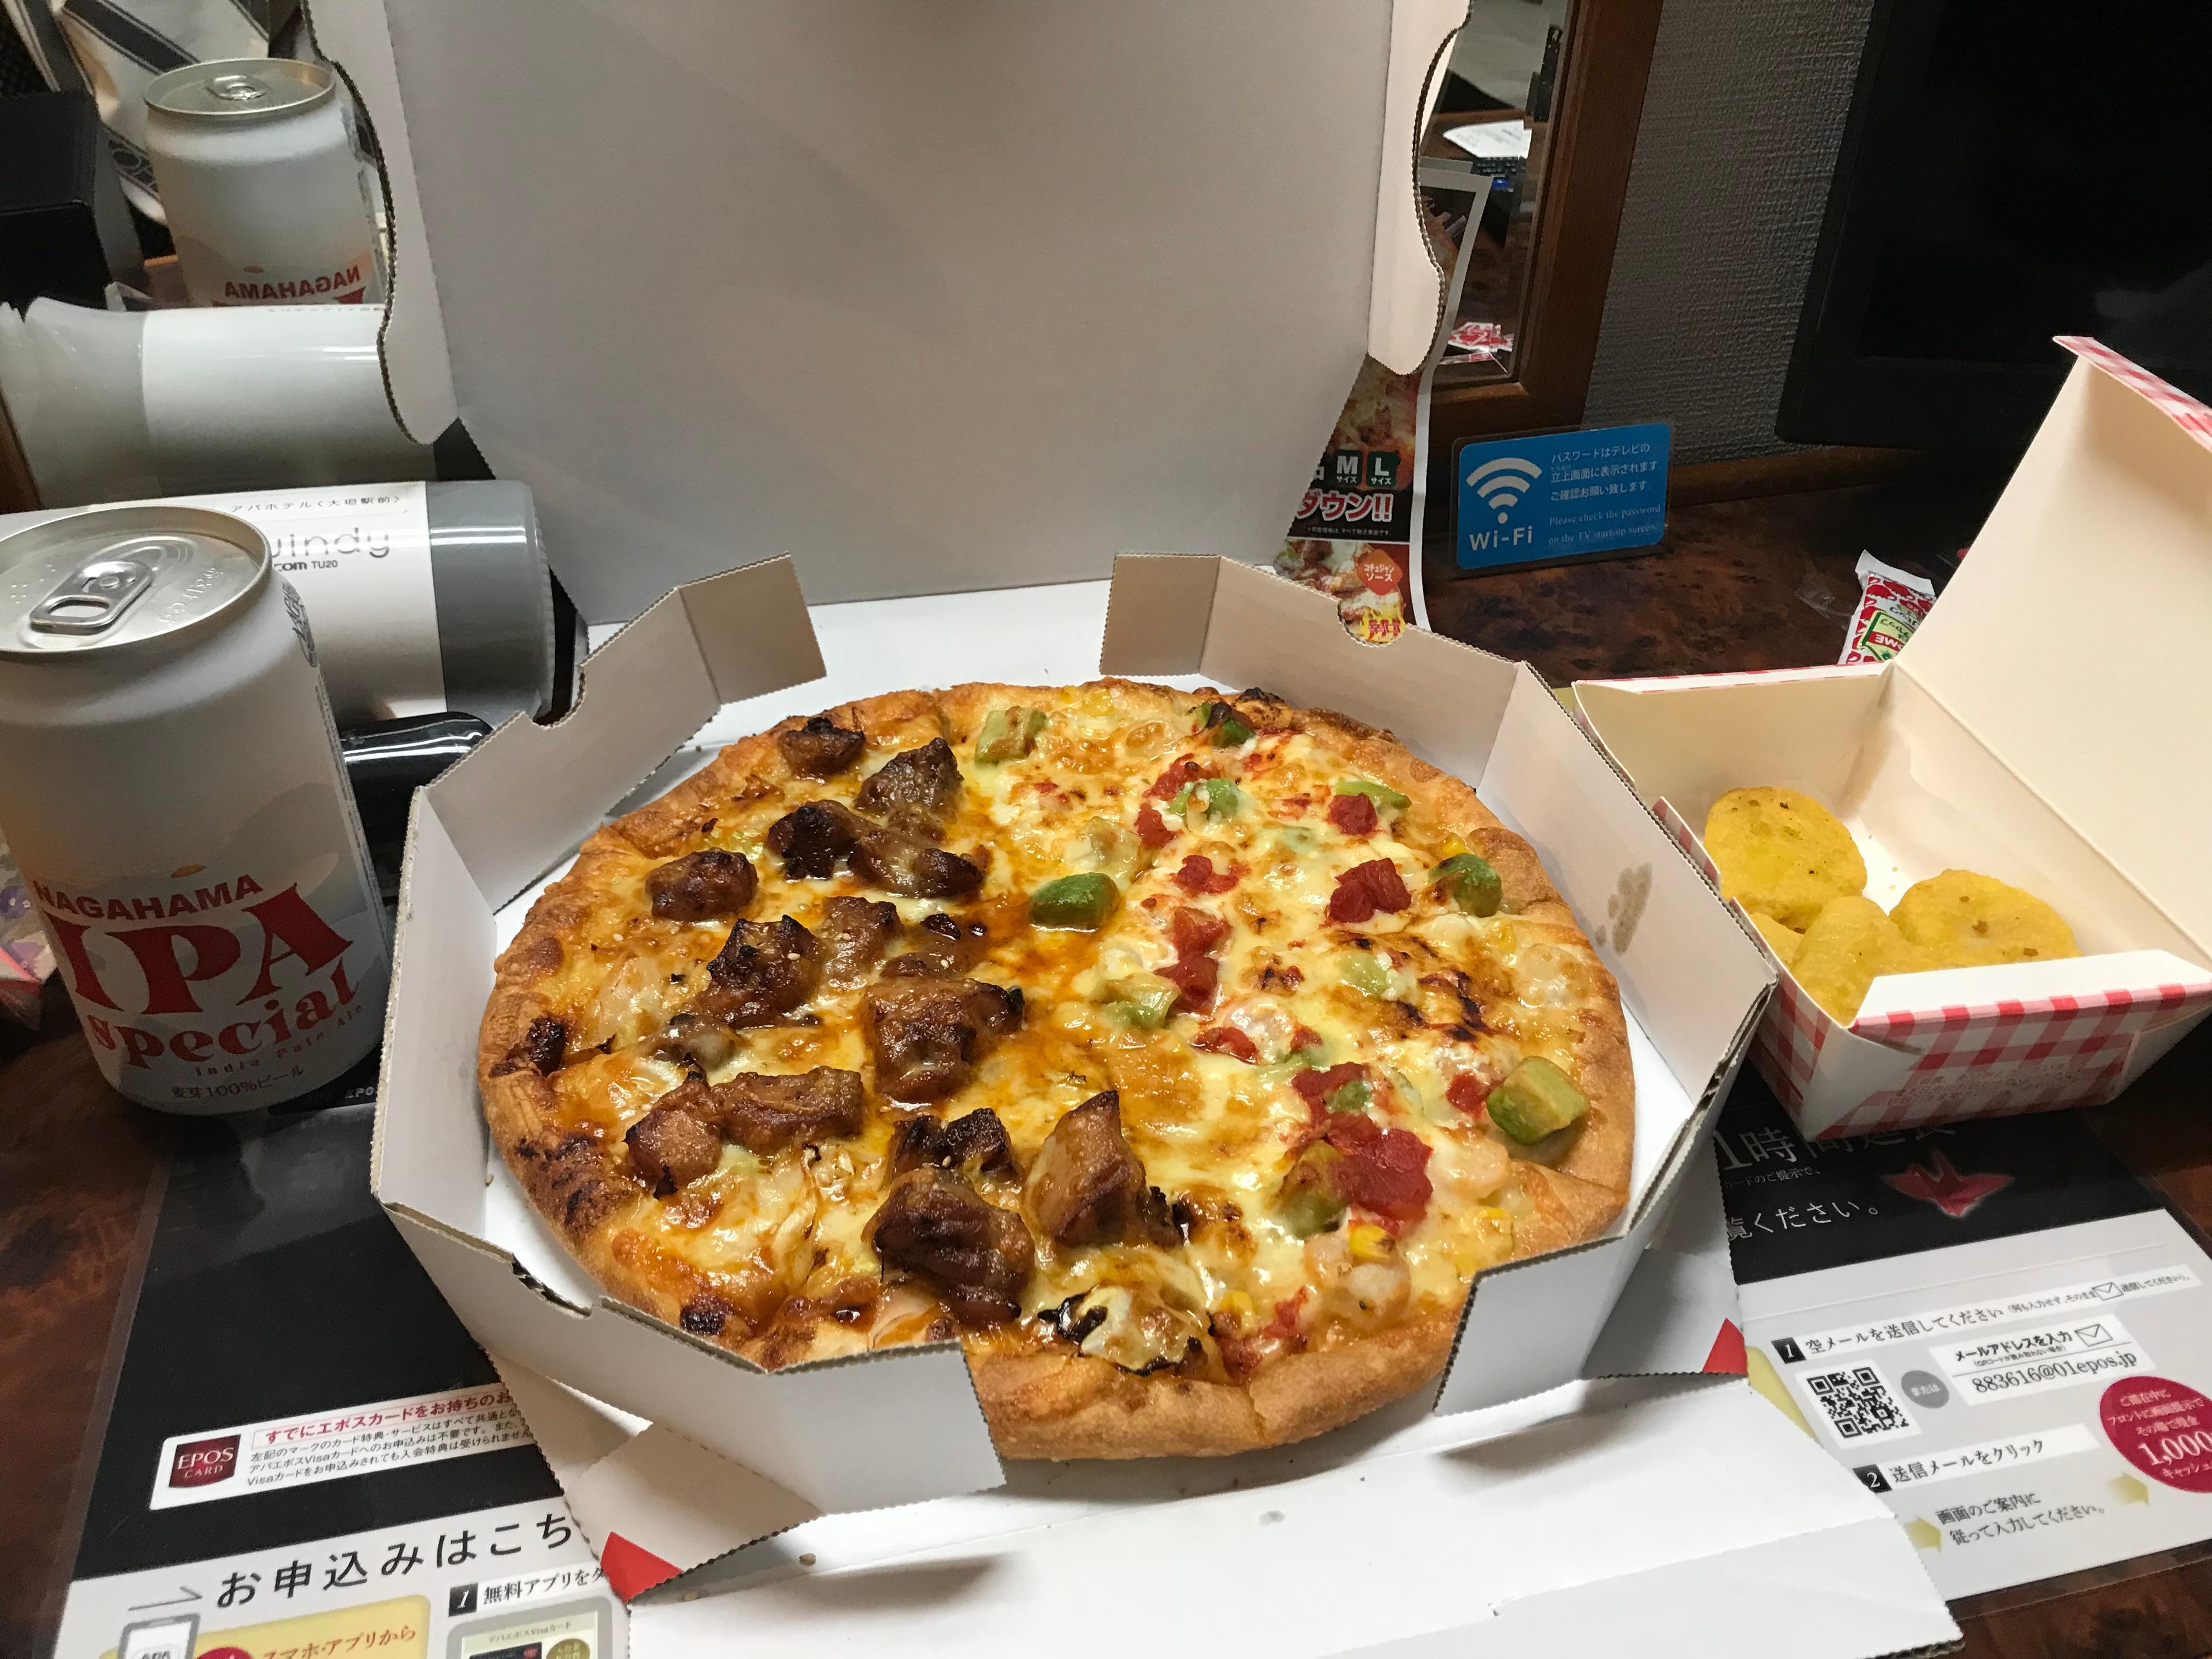 ピザ19枚目 新年デリ始めはピザーラsサイズ裏メニュー 全国の宅配ピザを食べ歩く1型糖尿病の人